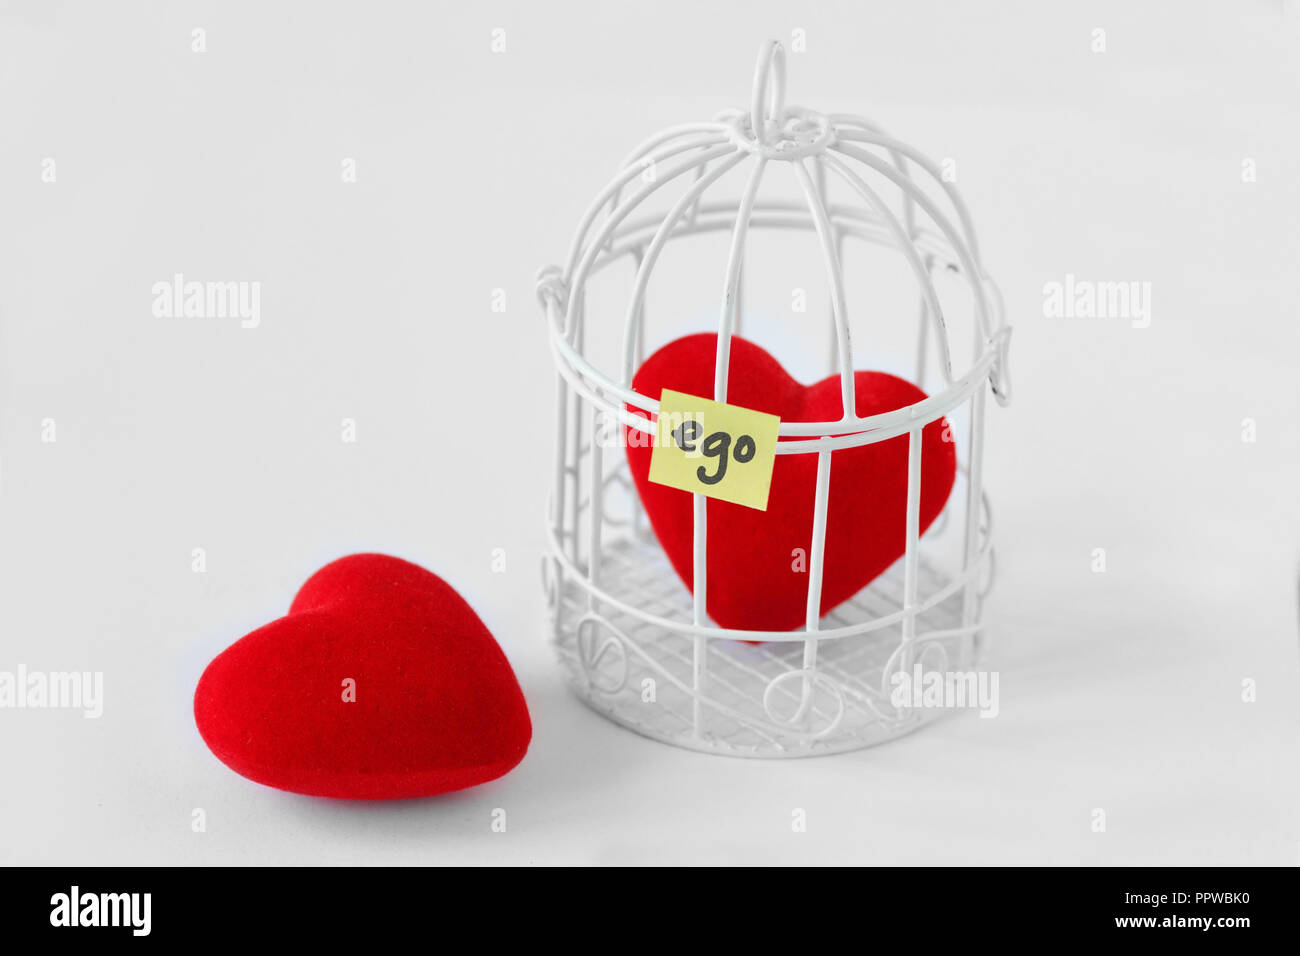 Sie Herz und Herz in einem Vogelkäfig mit dem Wort Ego auf Papier Hinweis geschrieben - Liebe und Freiheit Konzept Stockfoto